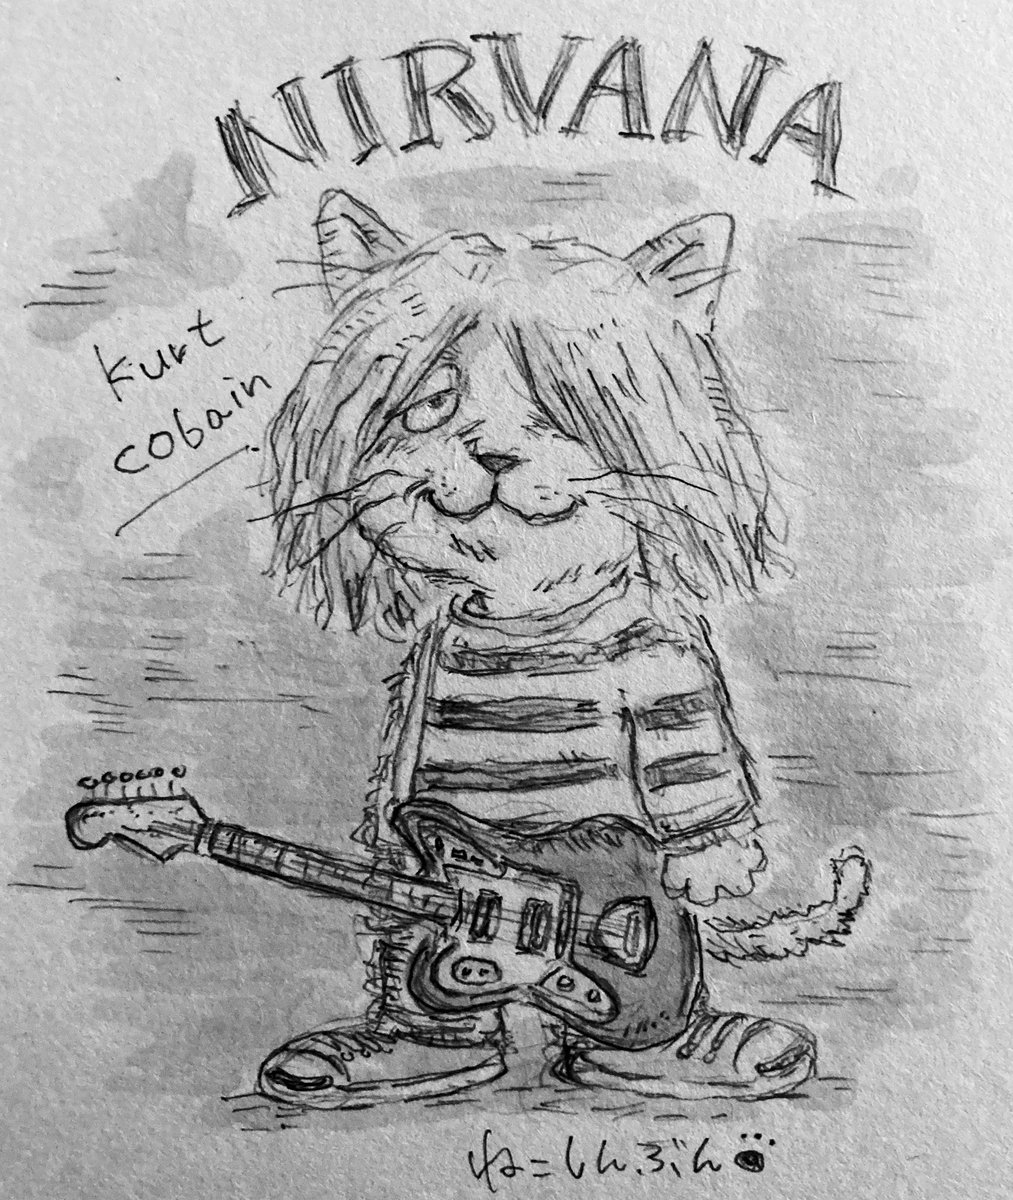 猫界のカートコバーン?
私の中でニルヴァーナは最高のグランジRockstarです♬

他の誰かになりたいだなんて
君という存在の無駄遣いだよ‥byカートコバーン
#イラスト #アナログイラスト #猫イラスト #絵描きさんと繋がりたい #Nirvana  #KurtCobain #洋楽ロック 